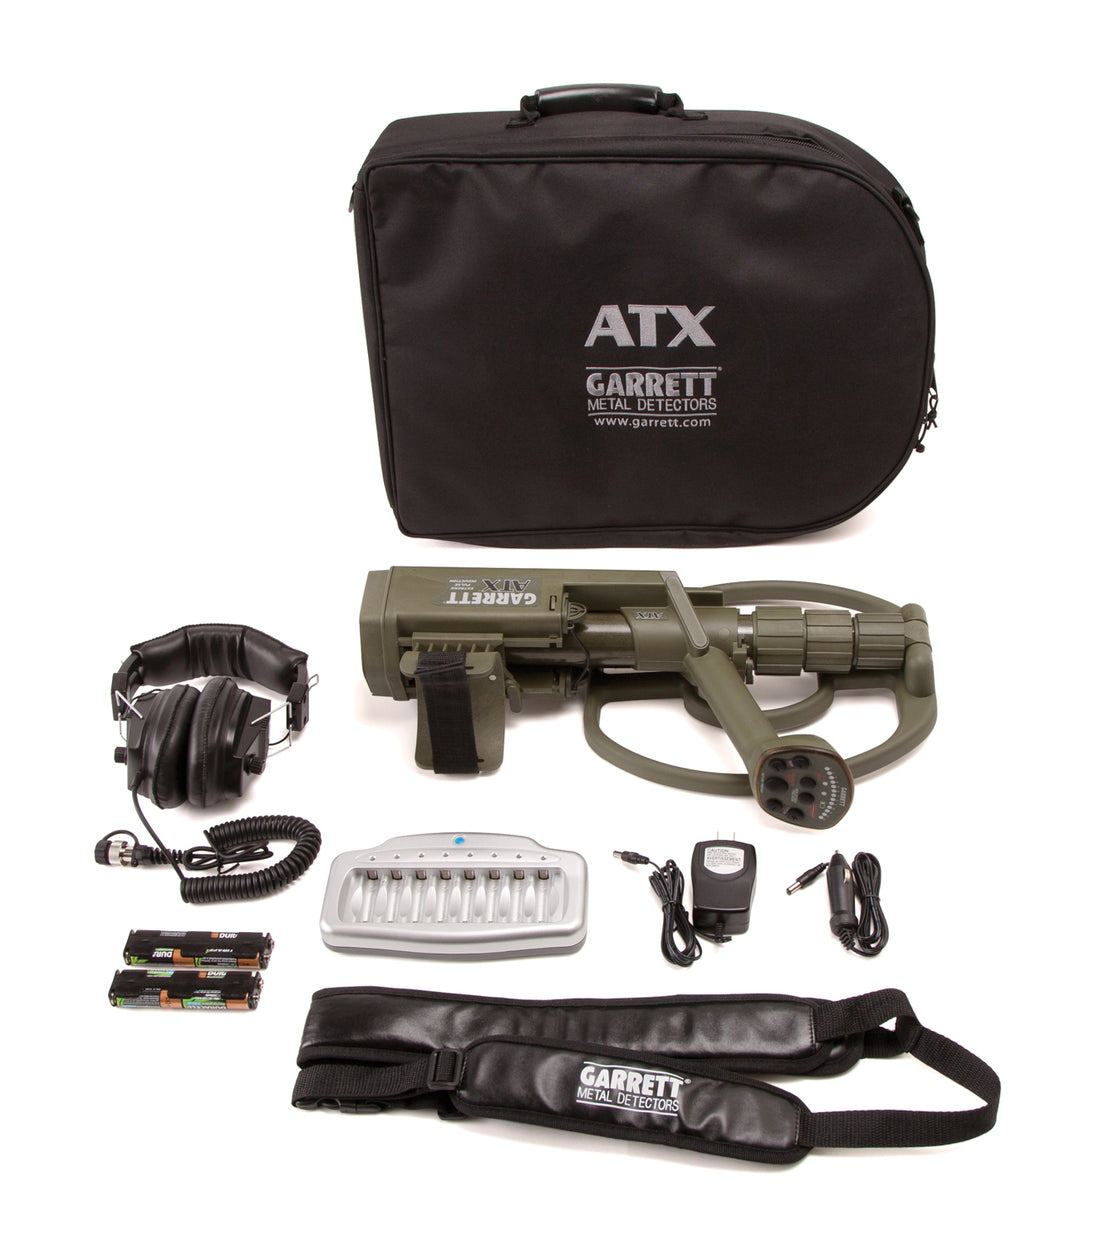 Garrett ATX Waterproof Metal Detector Standard Package with 12" Coil + Bonus Pack